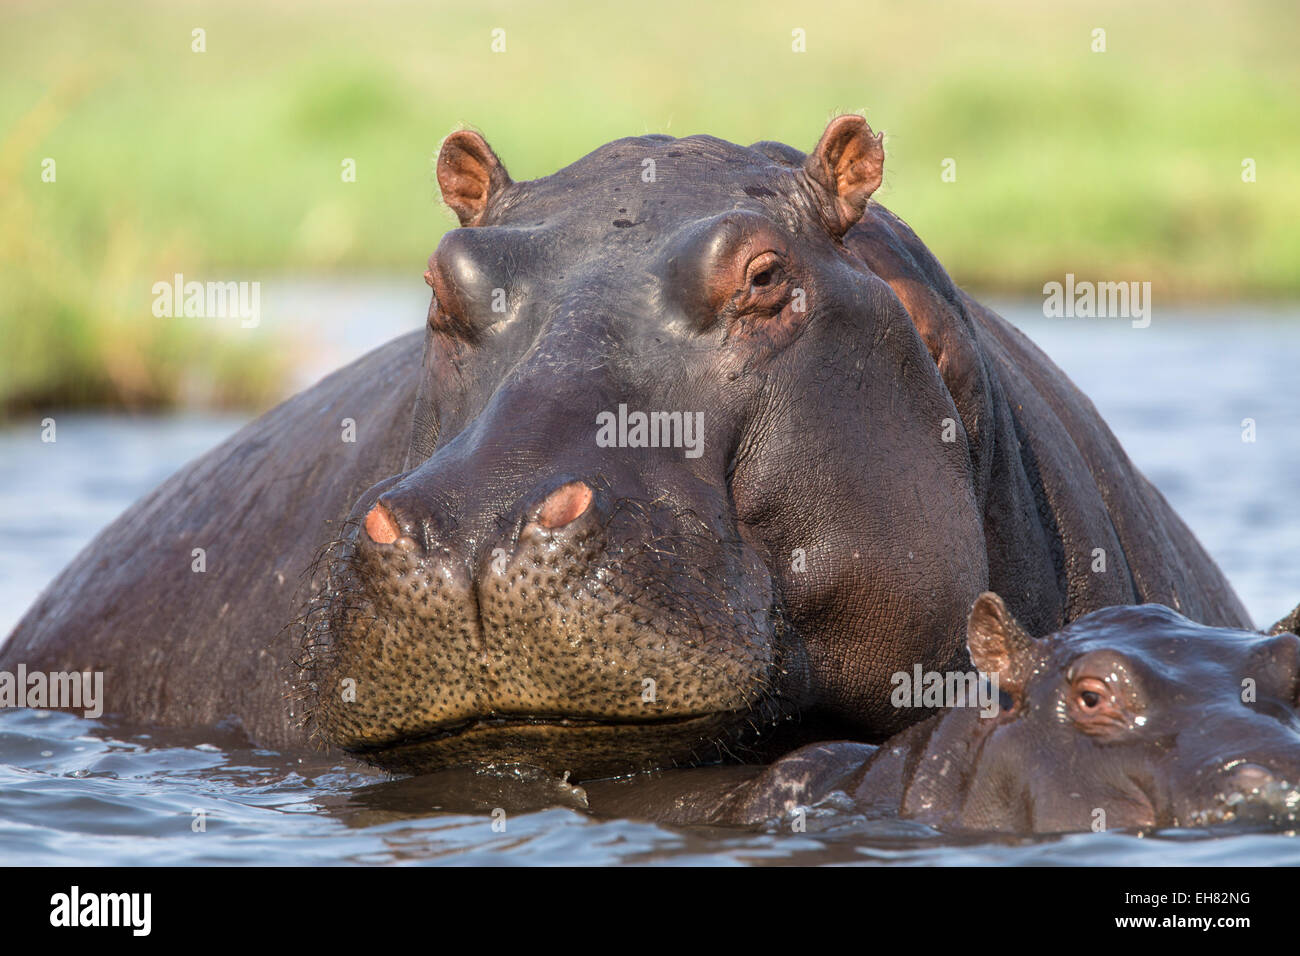 Hippopotamus (Hippopotamus amphibius) in river, Chobe National Park, Botswana, Africa Stock Photo